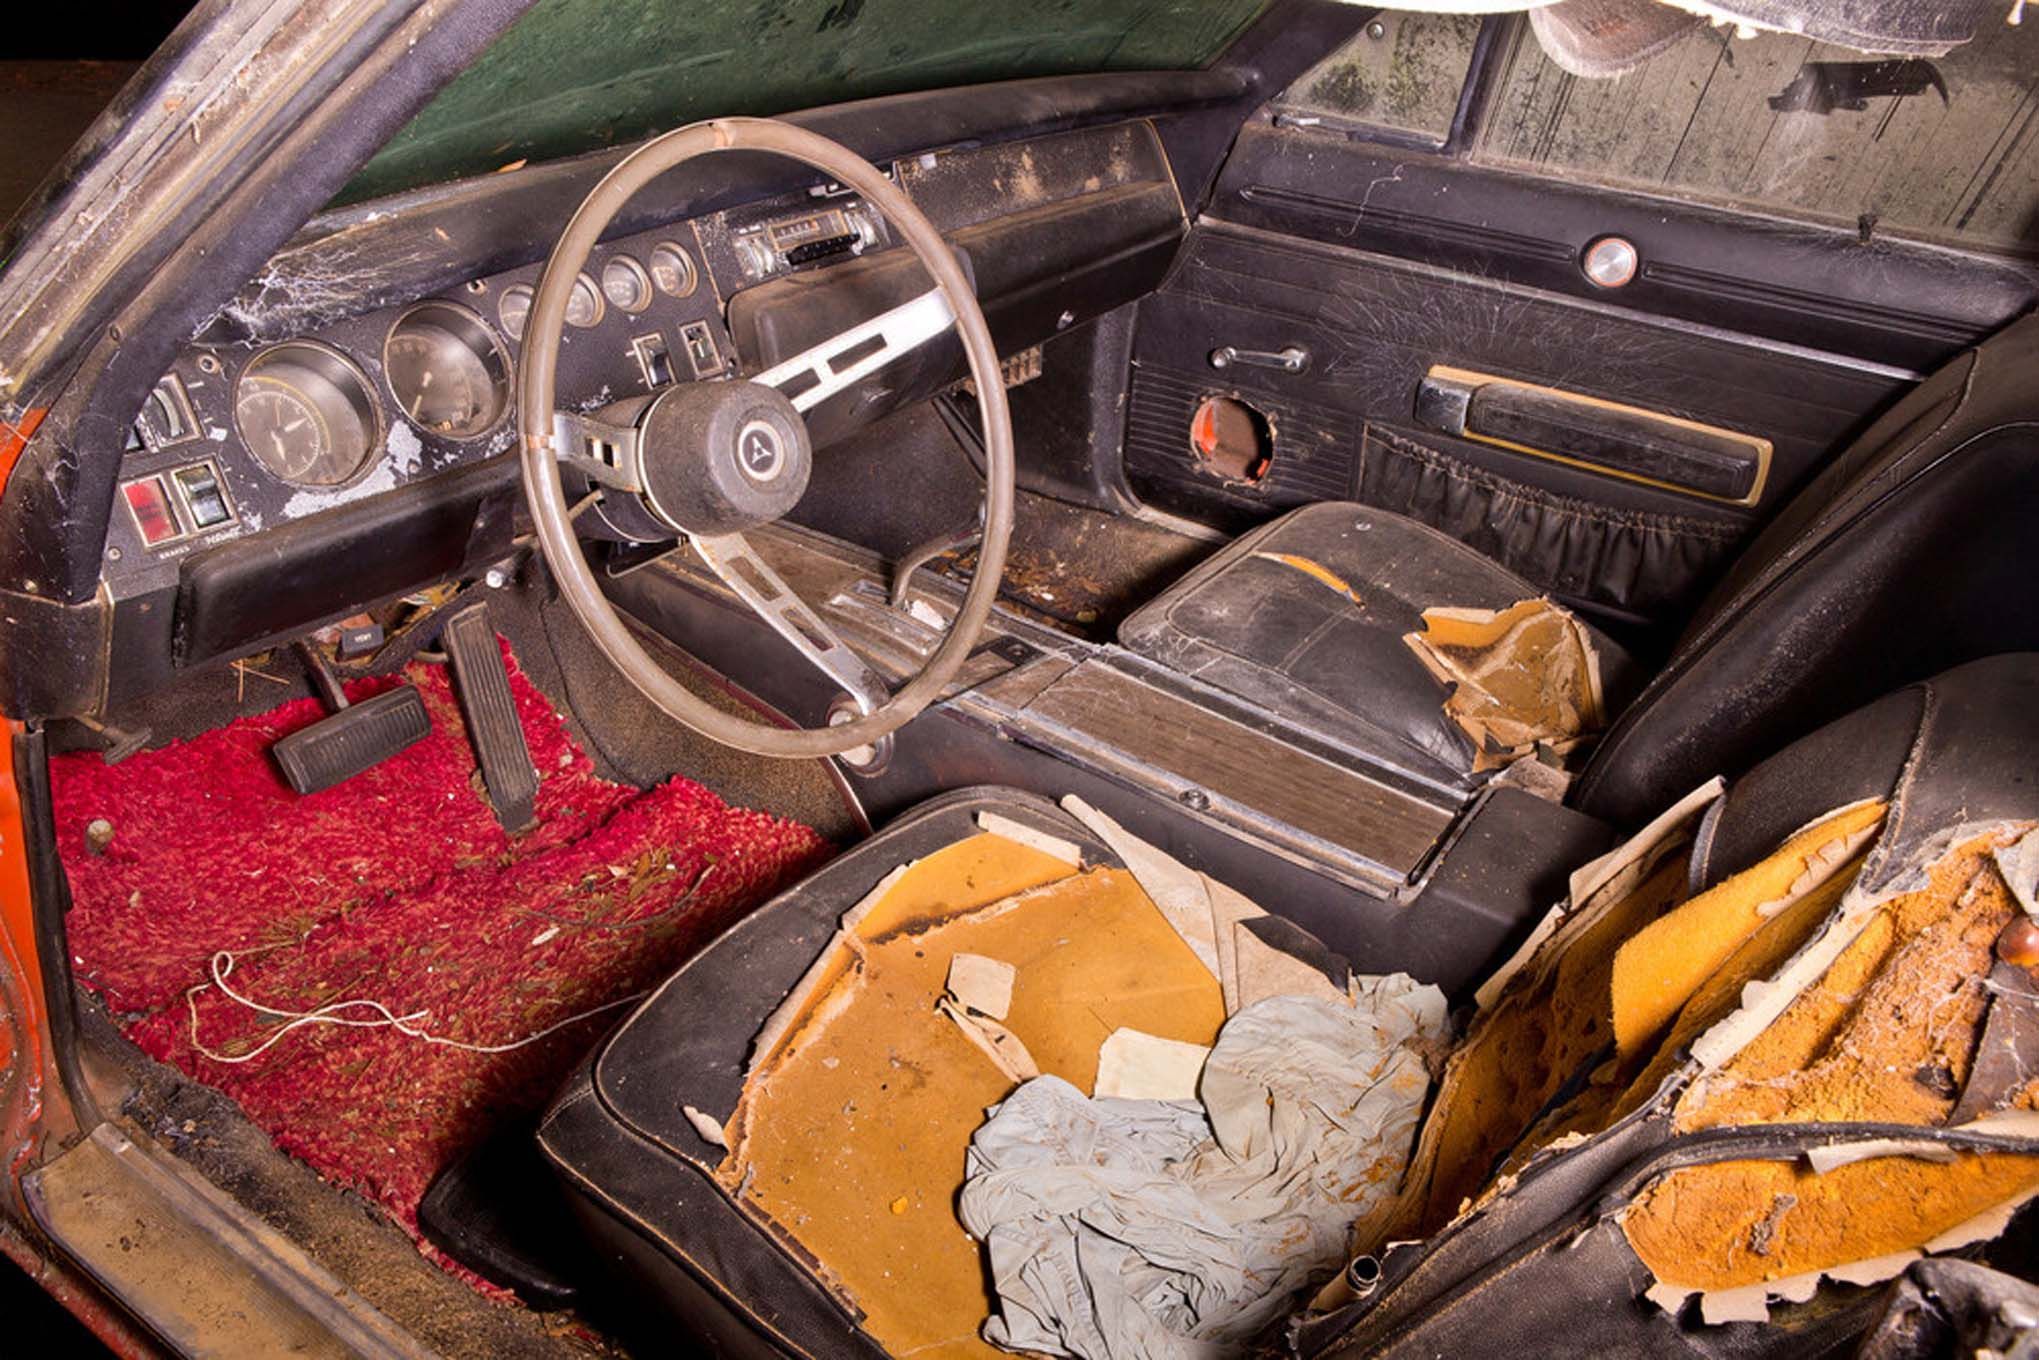 Dodge Daytona простоявший в сарае несколько десятилетий продадут с аукциона